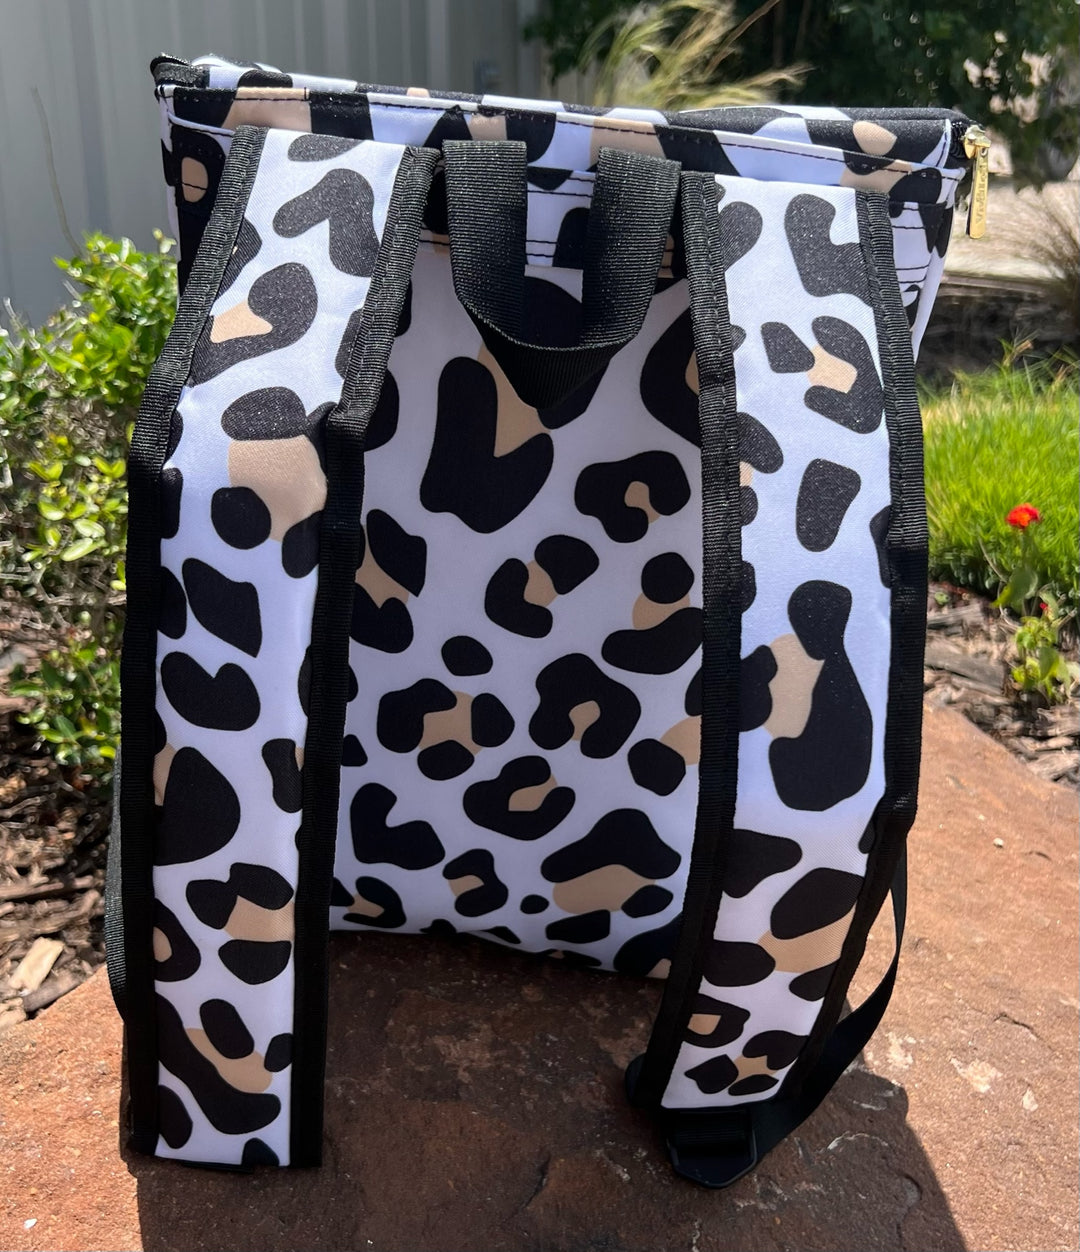 Leopard Backpack Cooler